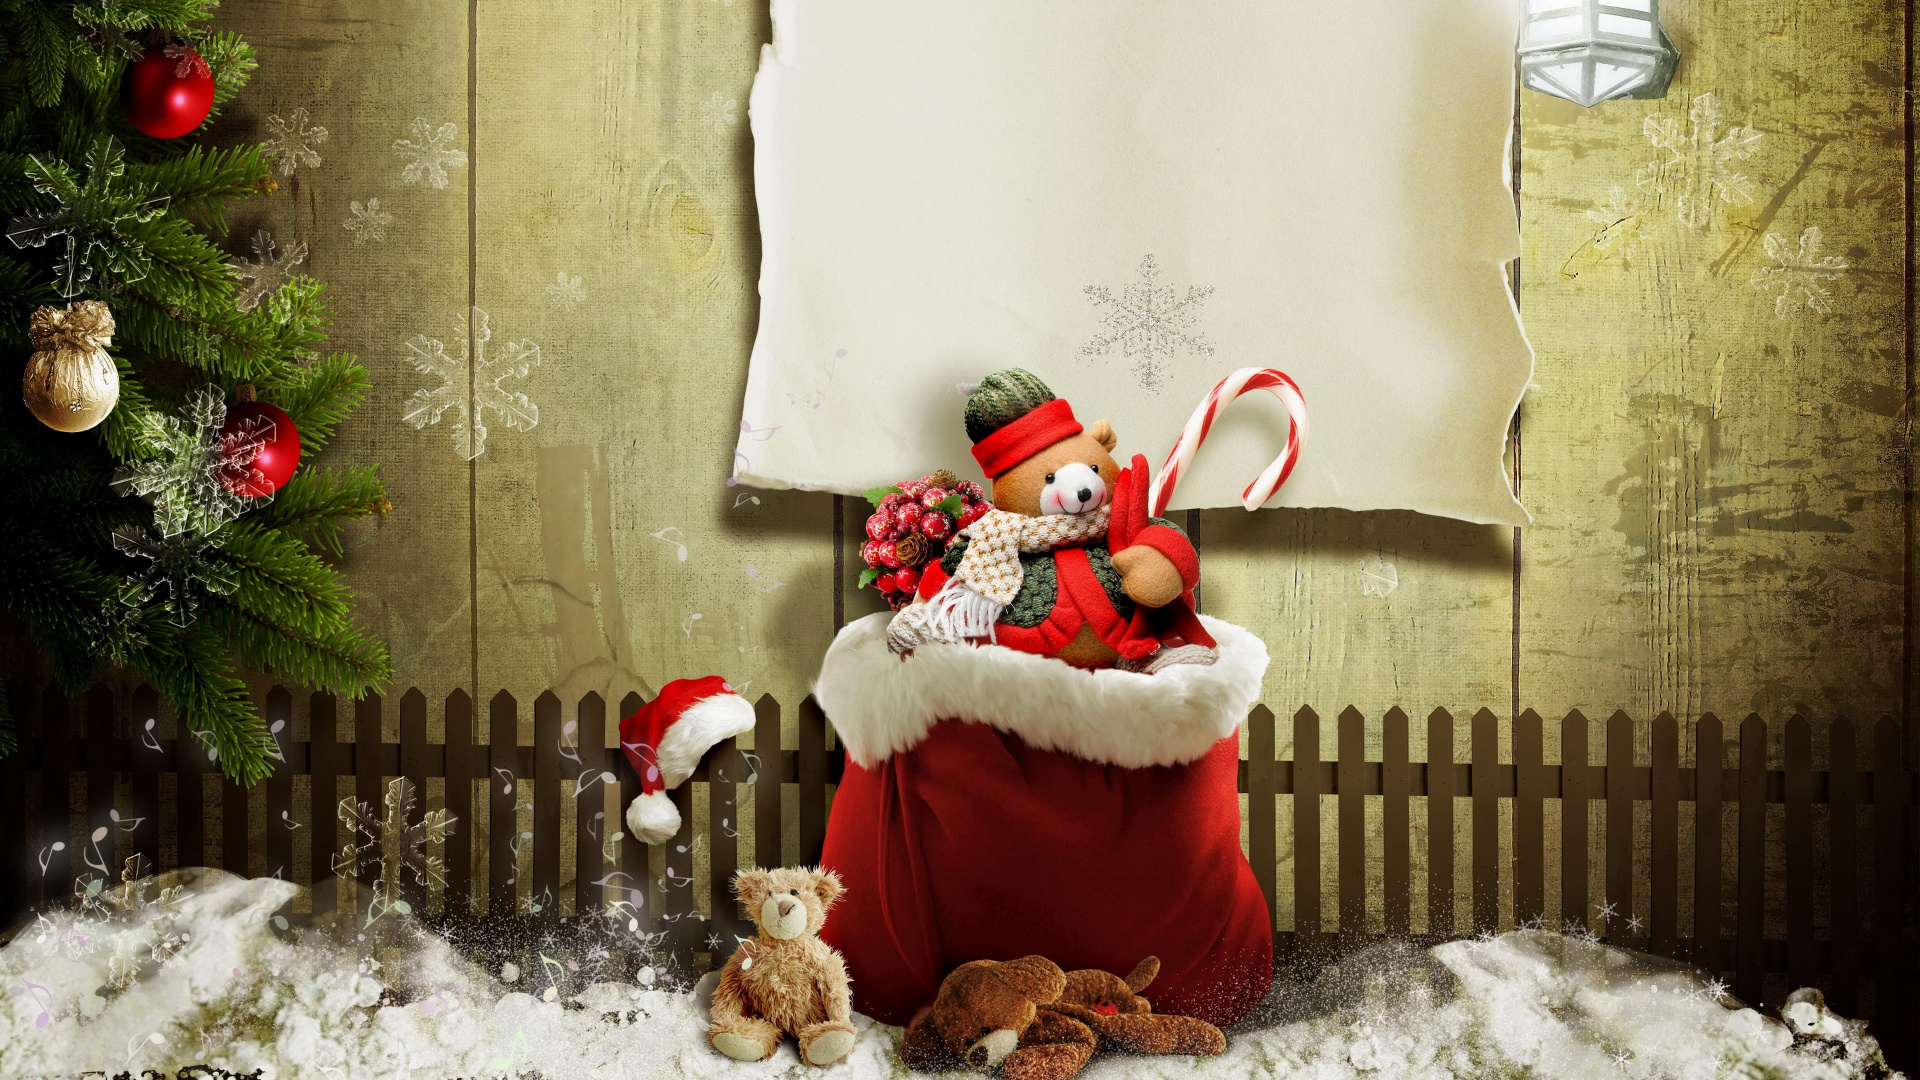 Le Jour De Noël, Santa Claus, Cadeau de Noël, Ornement de Noël, Hiver. Wallpaper in 1920x1080 Resolution